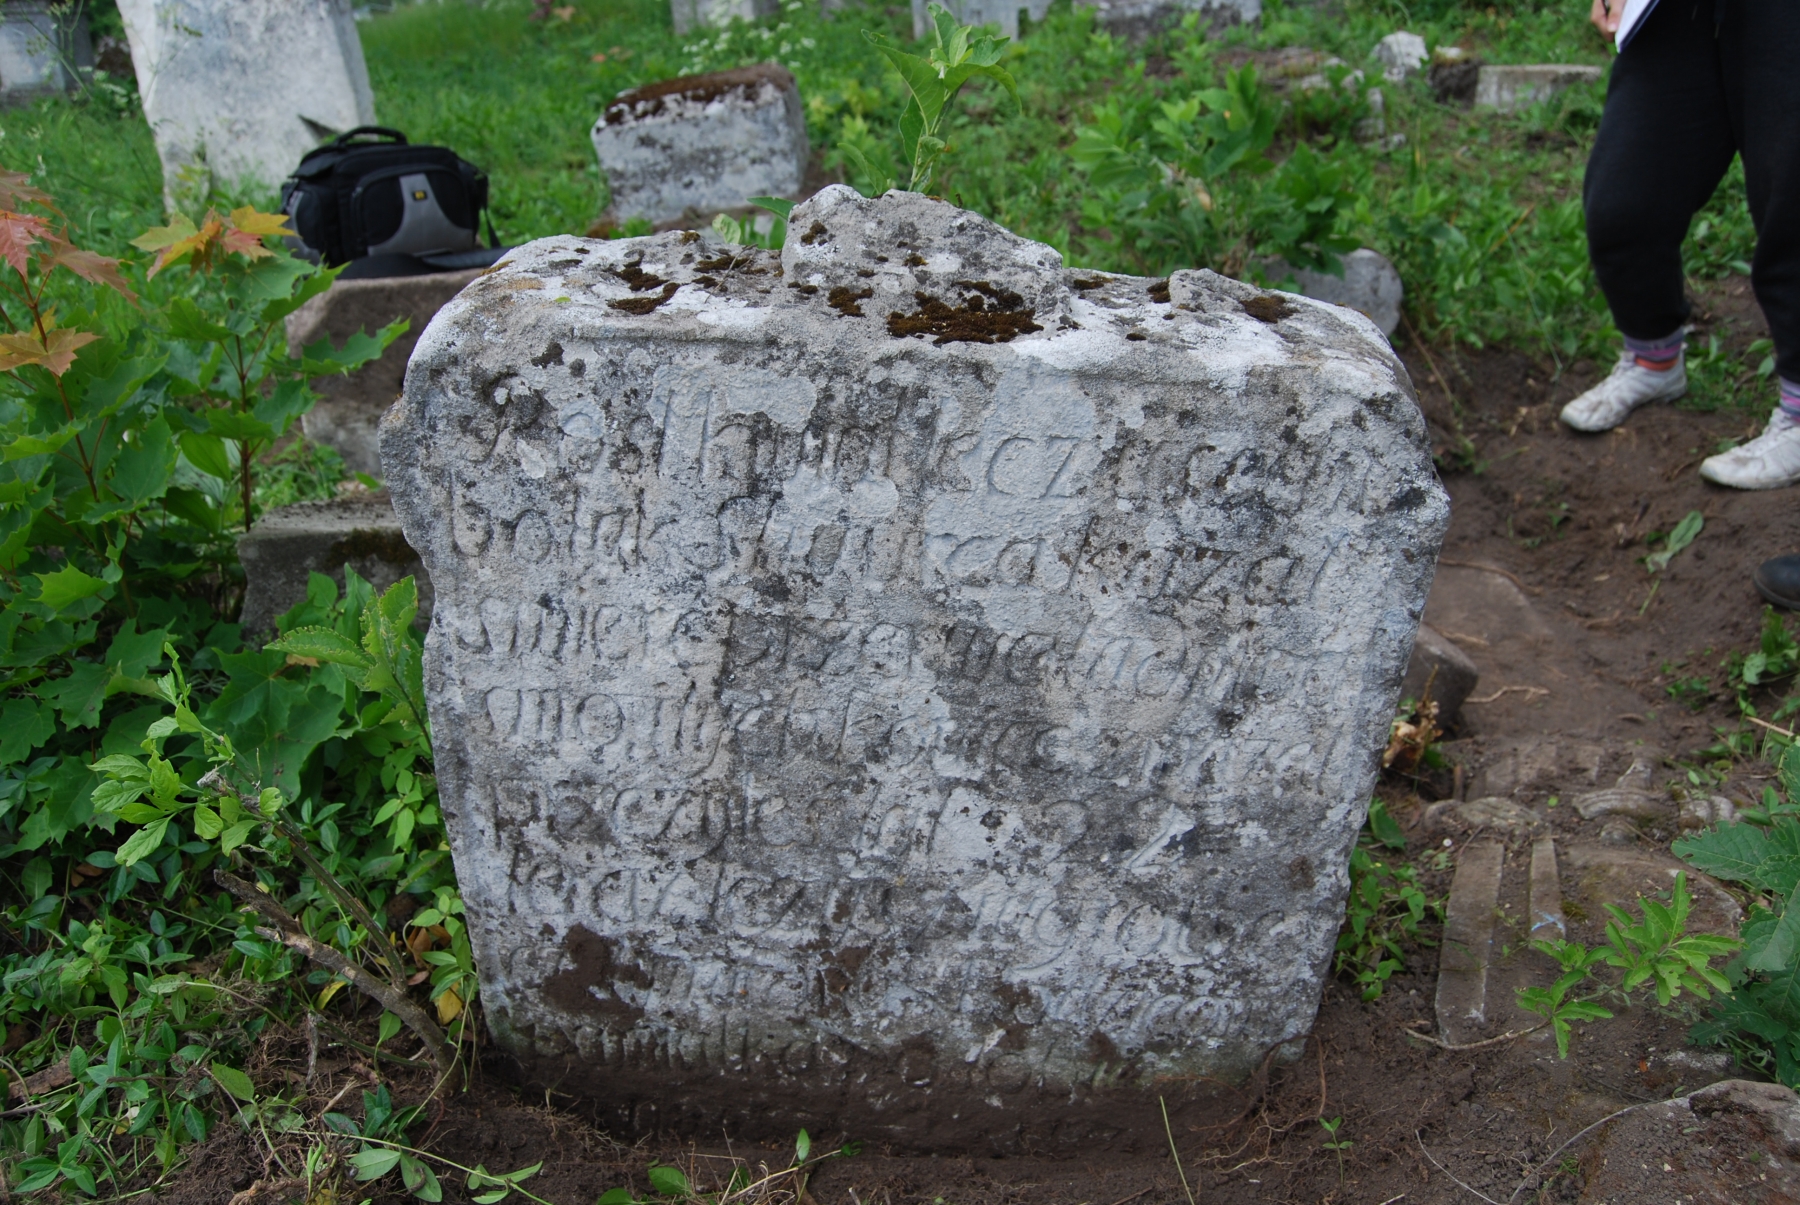 Inskrypcja zapisana kursywą., cmentarz w Zbarażu, sektor 01a